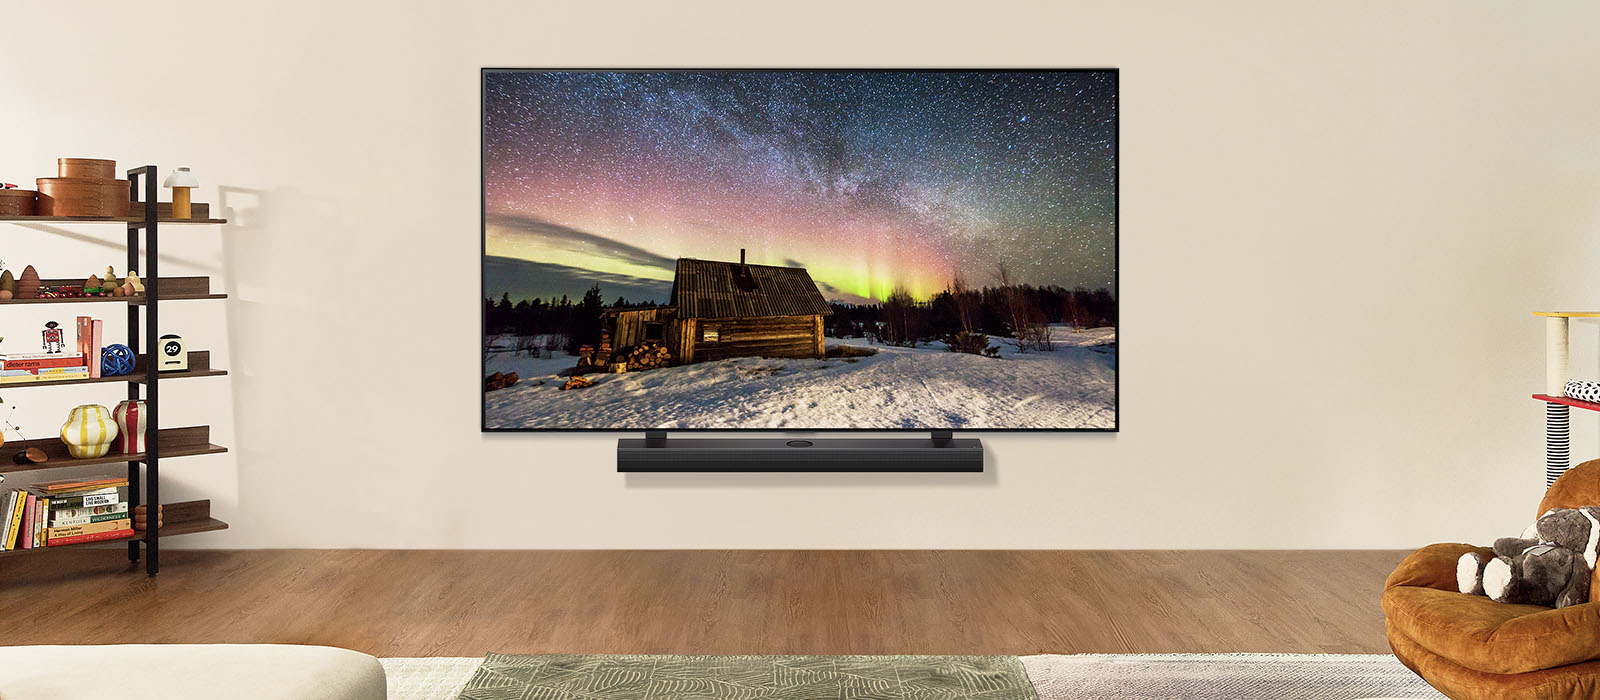 Fernseher von LG und LG Soundbar in einem modernen Wohnraum bei Tag. Das Bild des Polarlichts wird auf dem Bildschirm mit der idealen Helligkeitsstufe angezeigt.